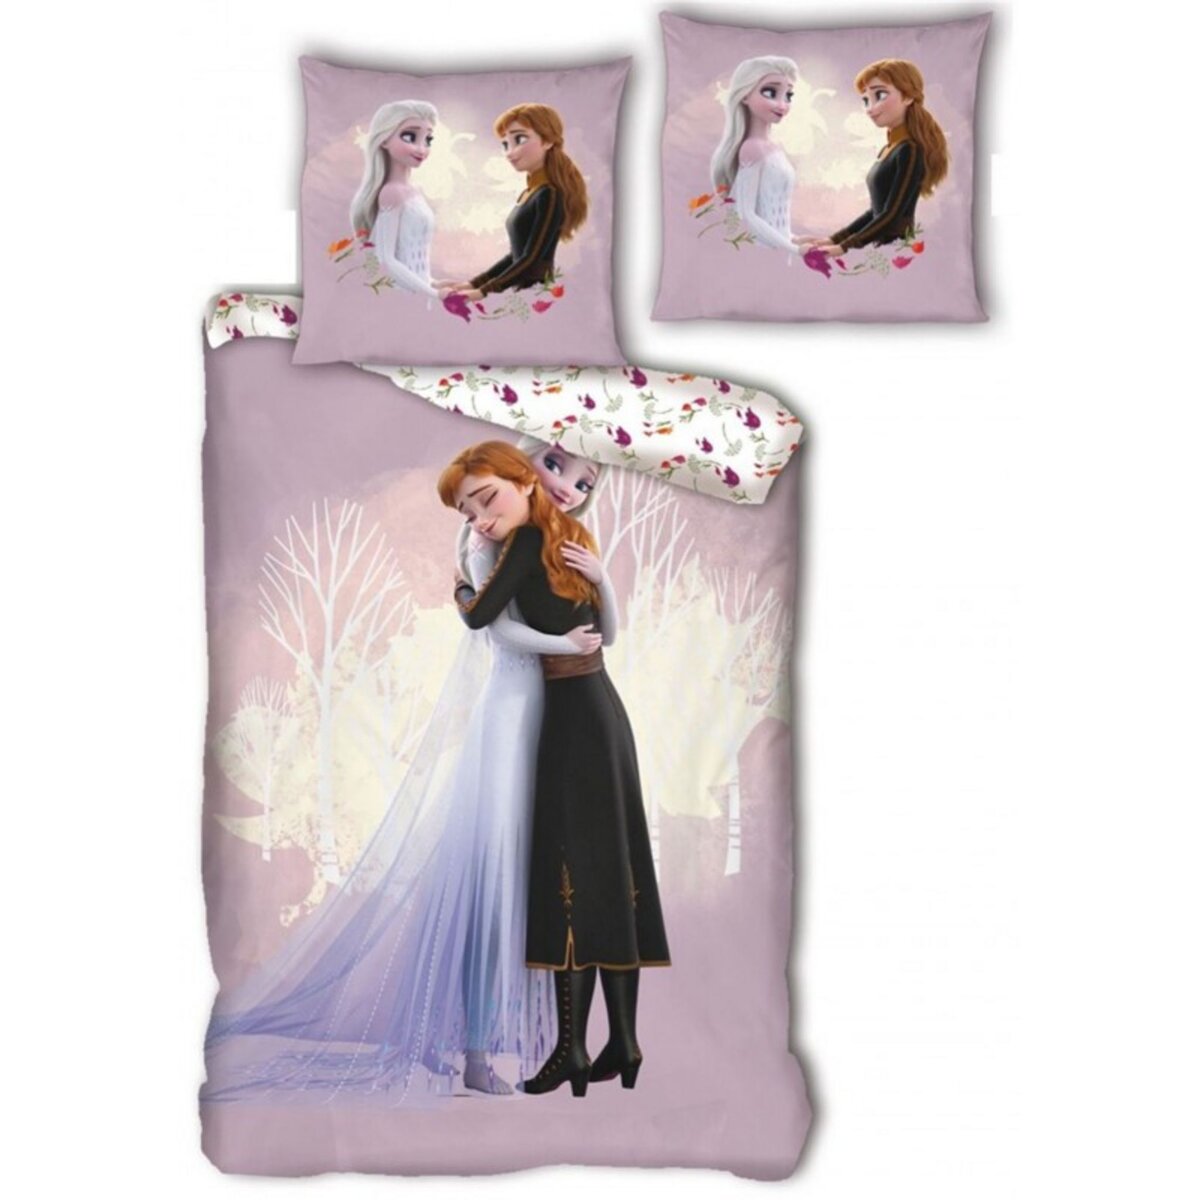 Couverture lestée pour enfants La Reine des neiges de Disney (40 x 60  pouces), 6 lb